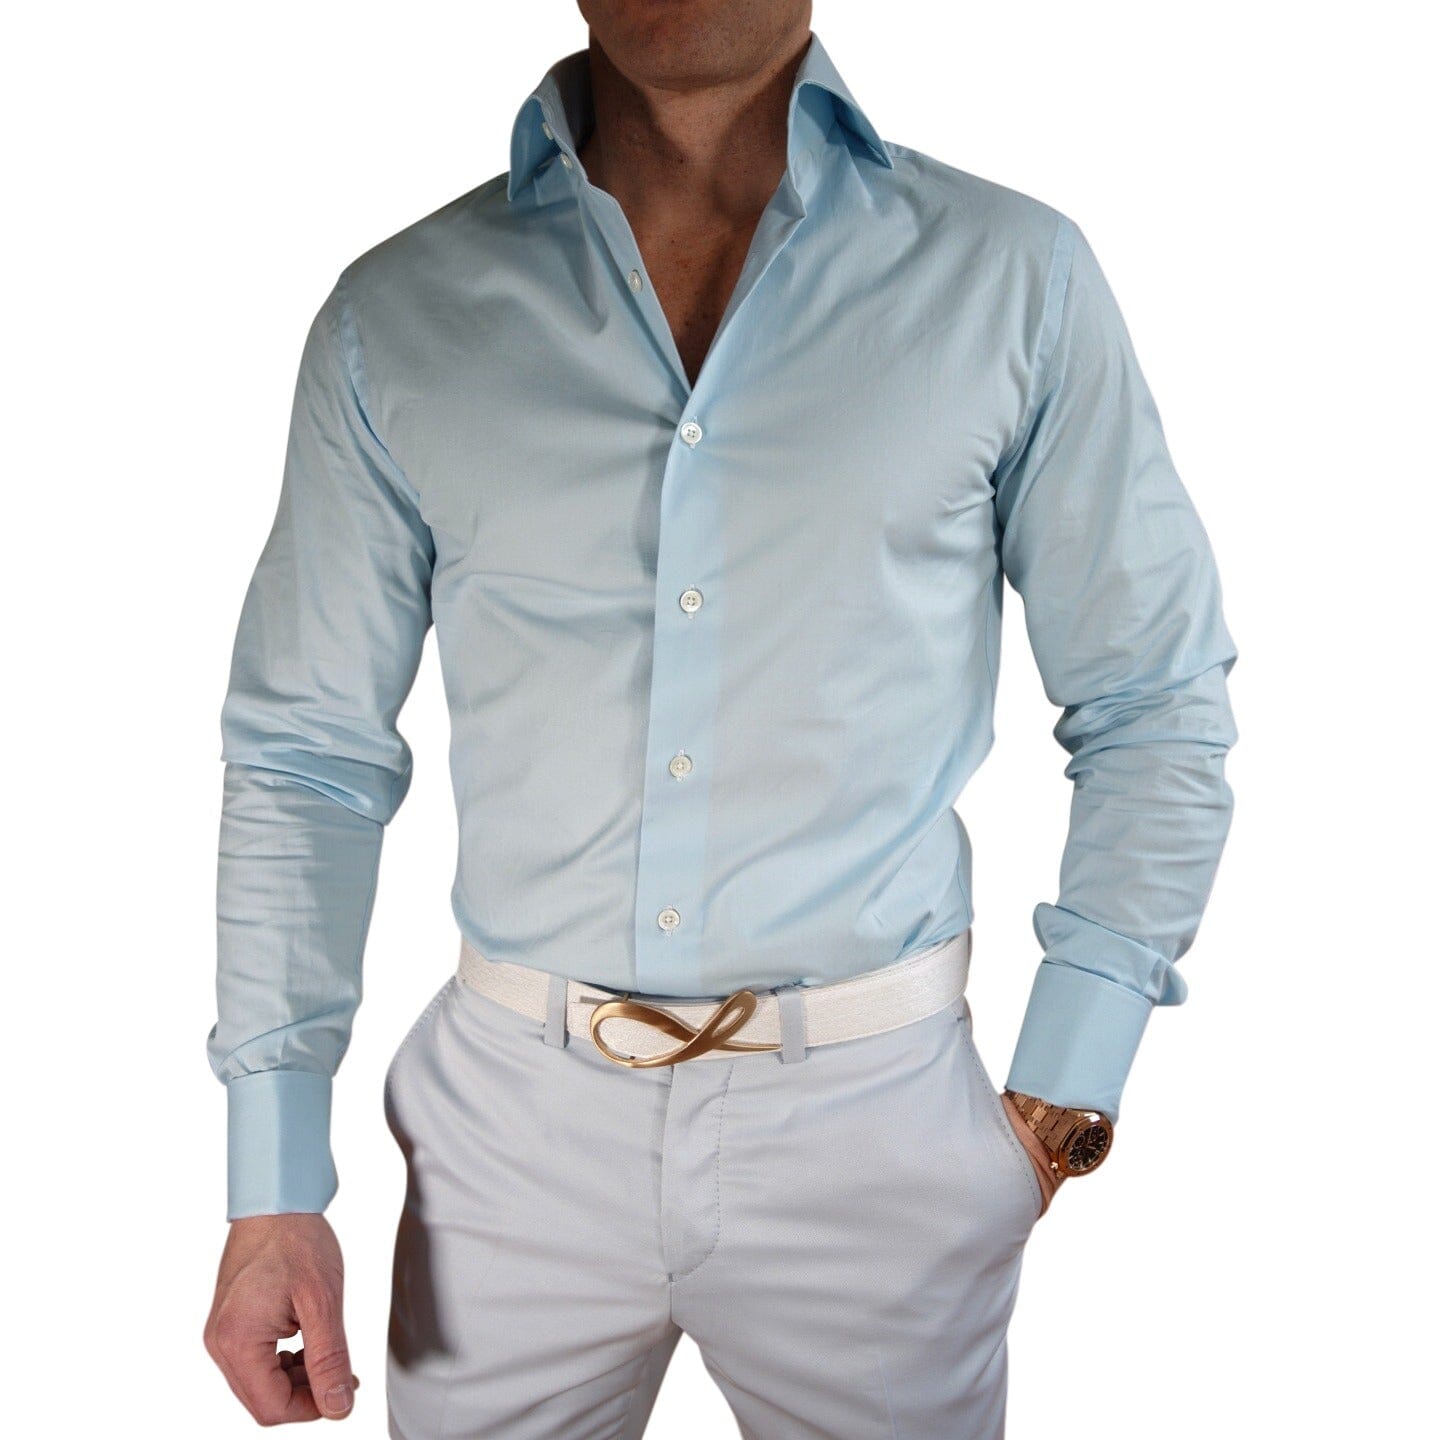 Men's Formal Dress Shirt, High Collar Shirt